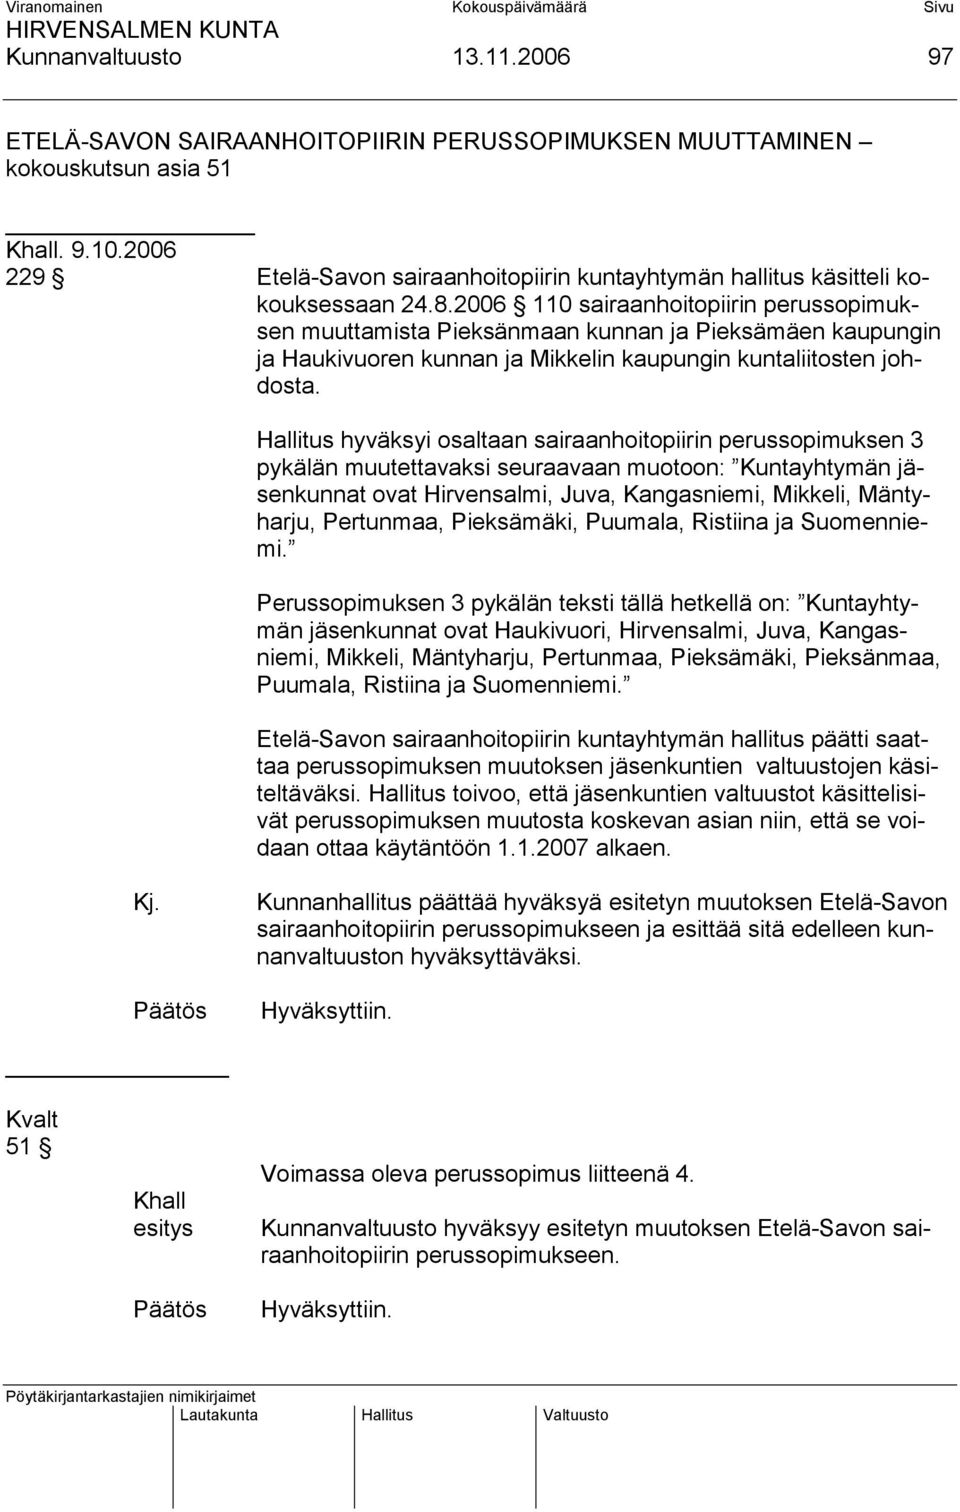 2006 110 sairaanhoitopiirin perussopimuksen muuttamista Pieksänmaan kunnan ja Pieksämäen kaupungin ja Haukivuoren kunnan ja Mikkelin kaupungin kuntaliitosten johdosta.